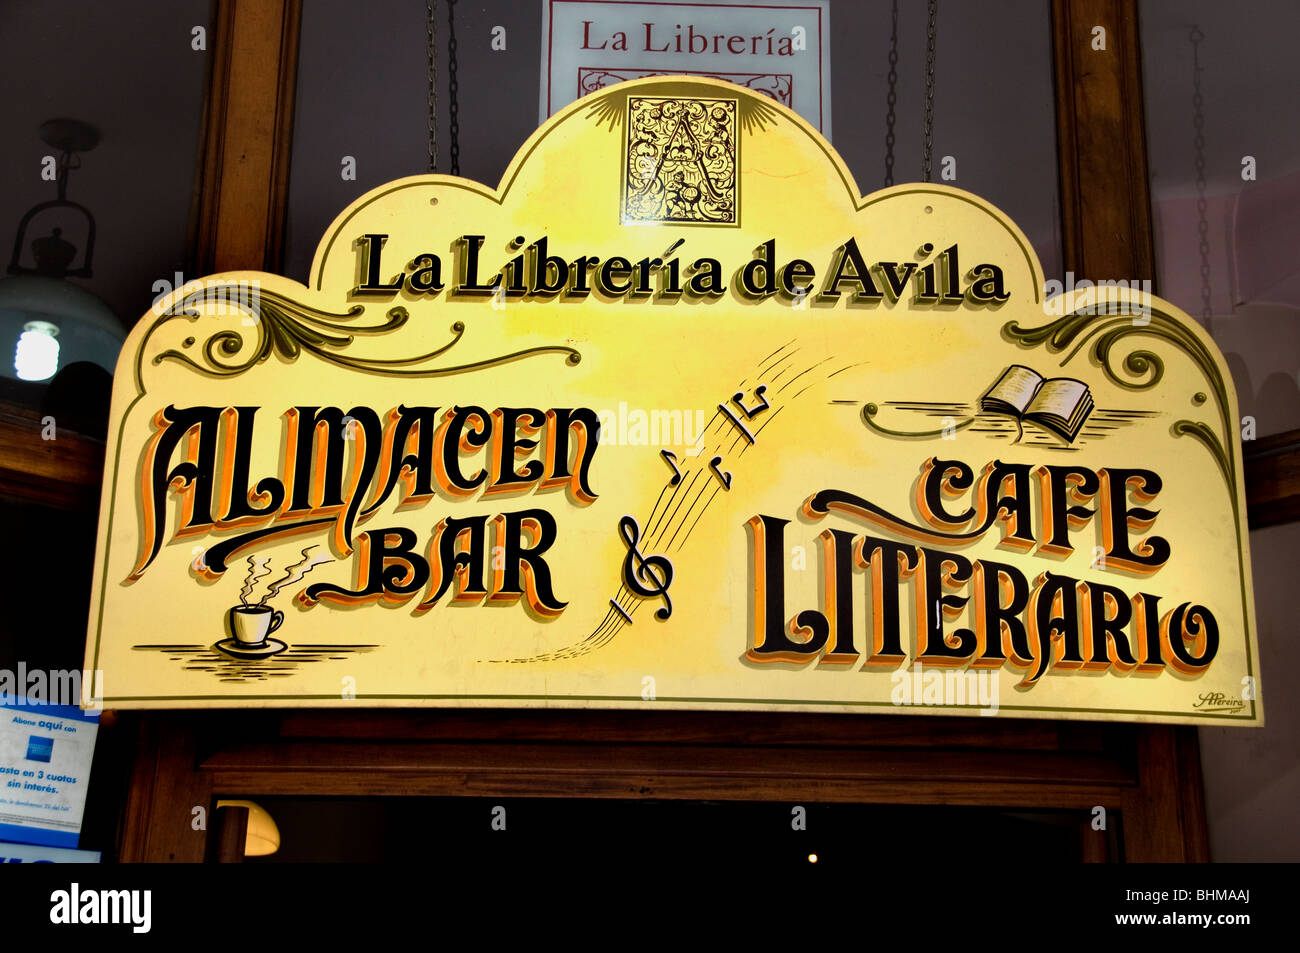 La Libreria de Avila Buenos Aires Argentina San Telmo  Bar literary library cafe Stock Photo